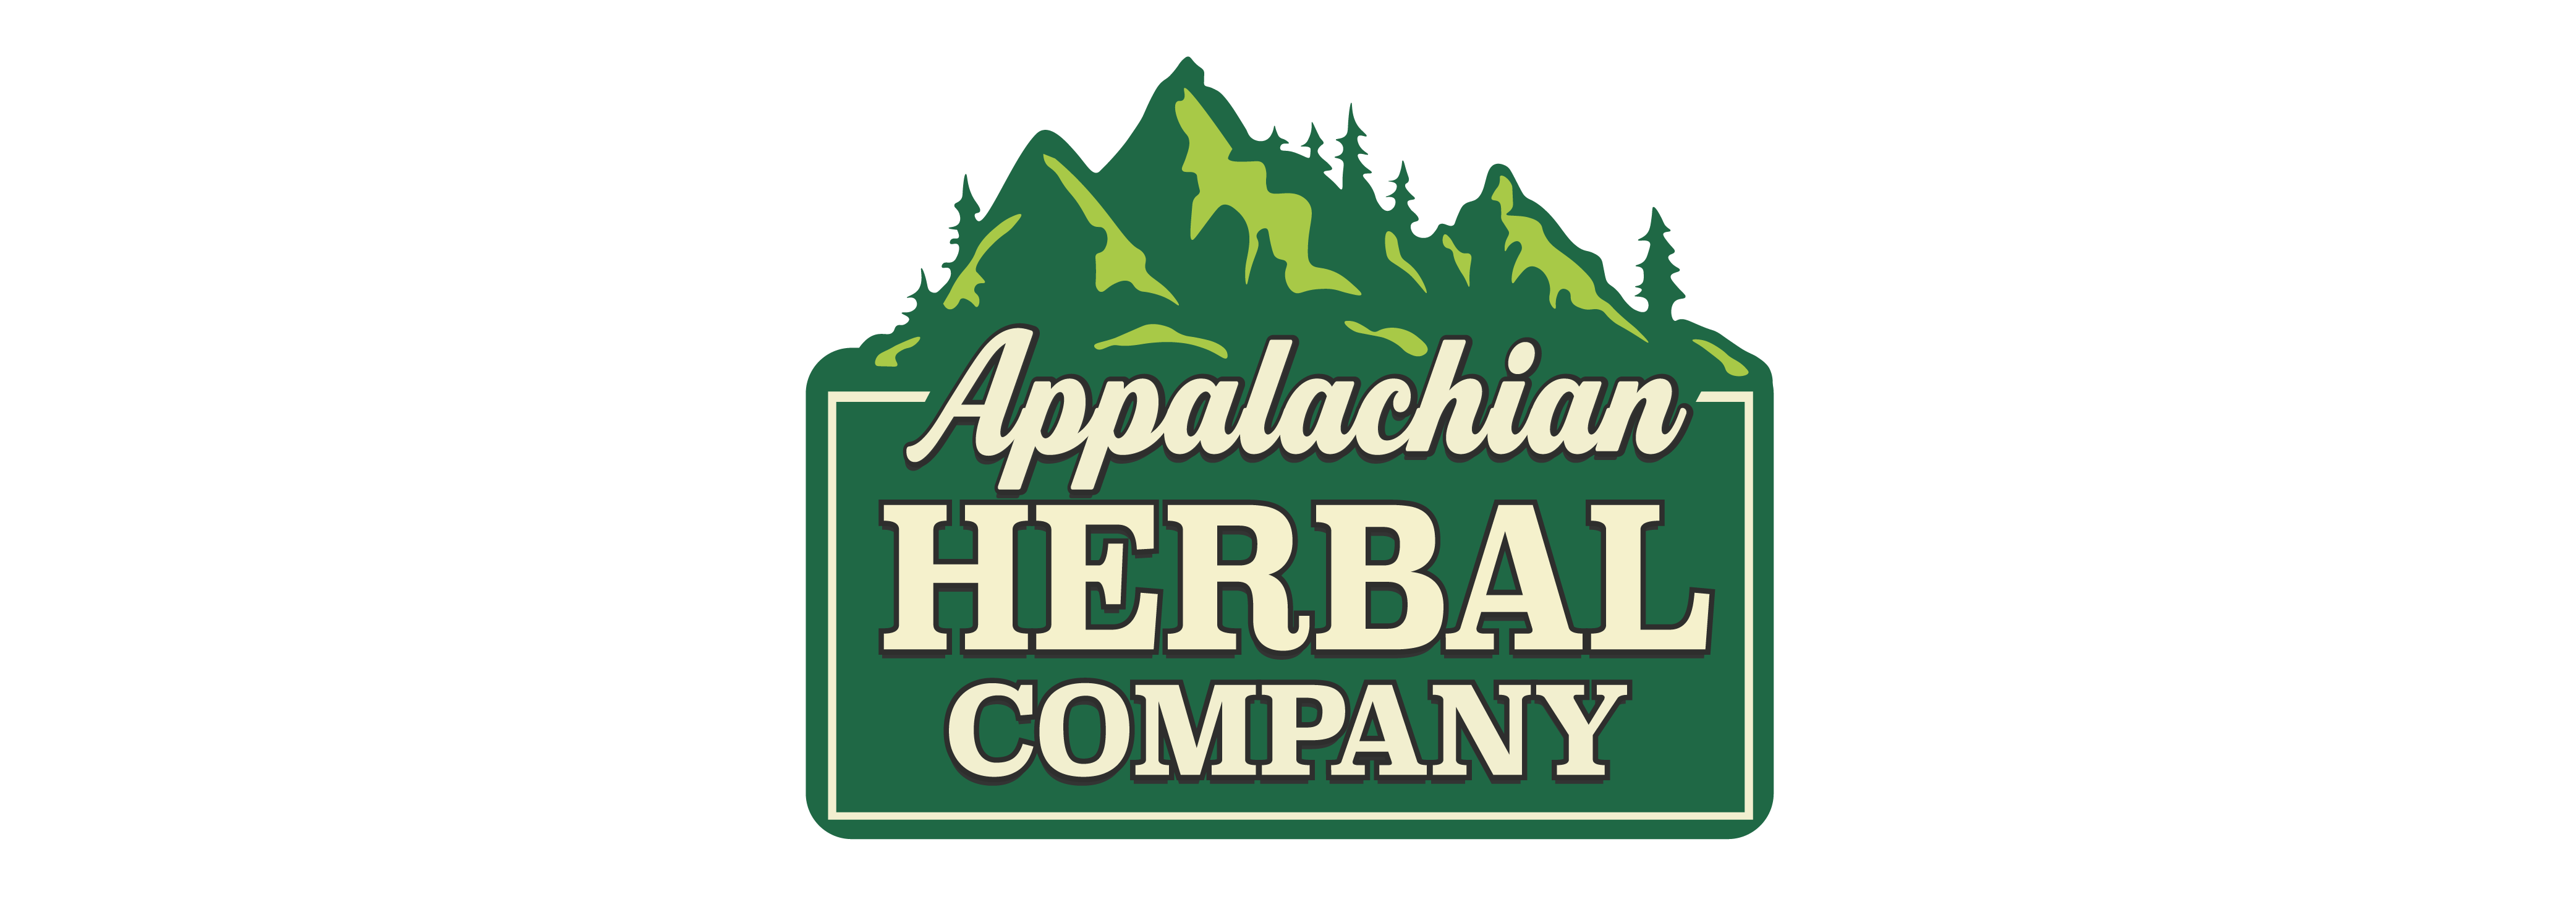 Logo Appalachian Herbal Company